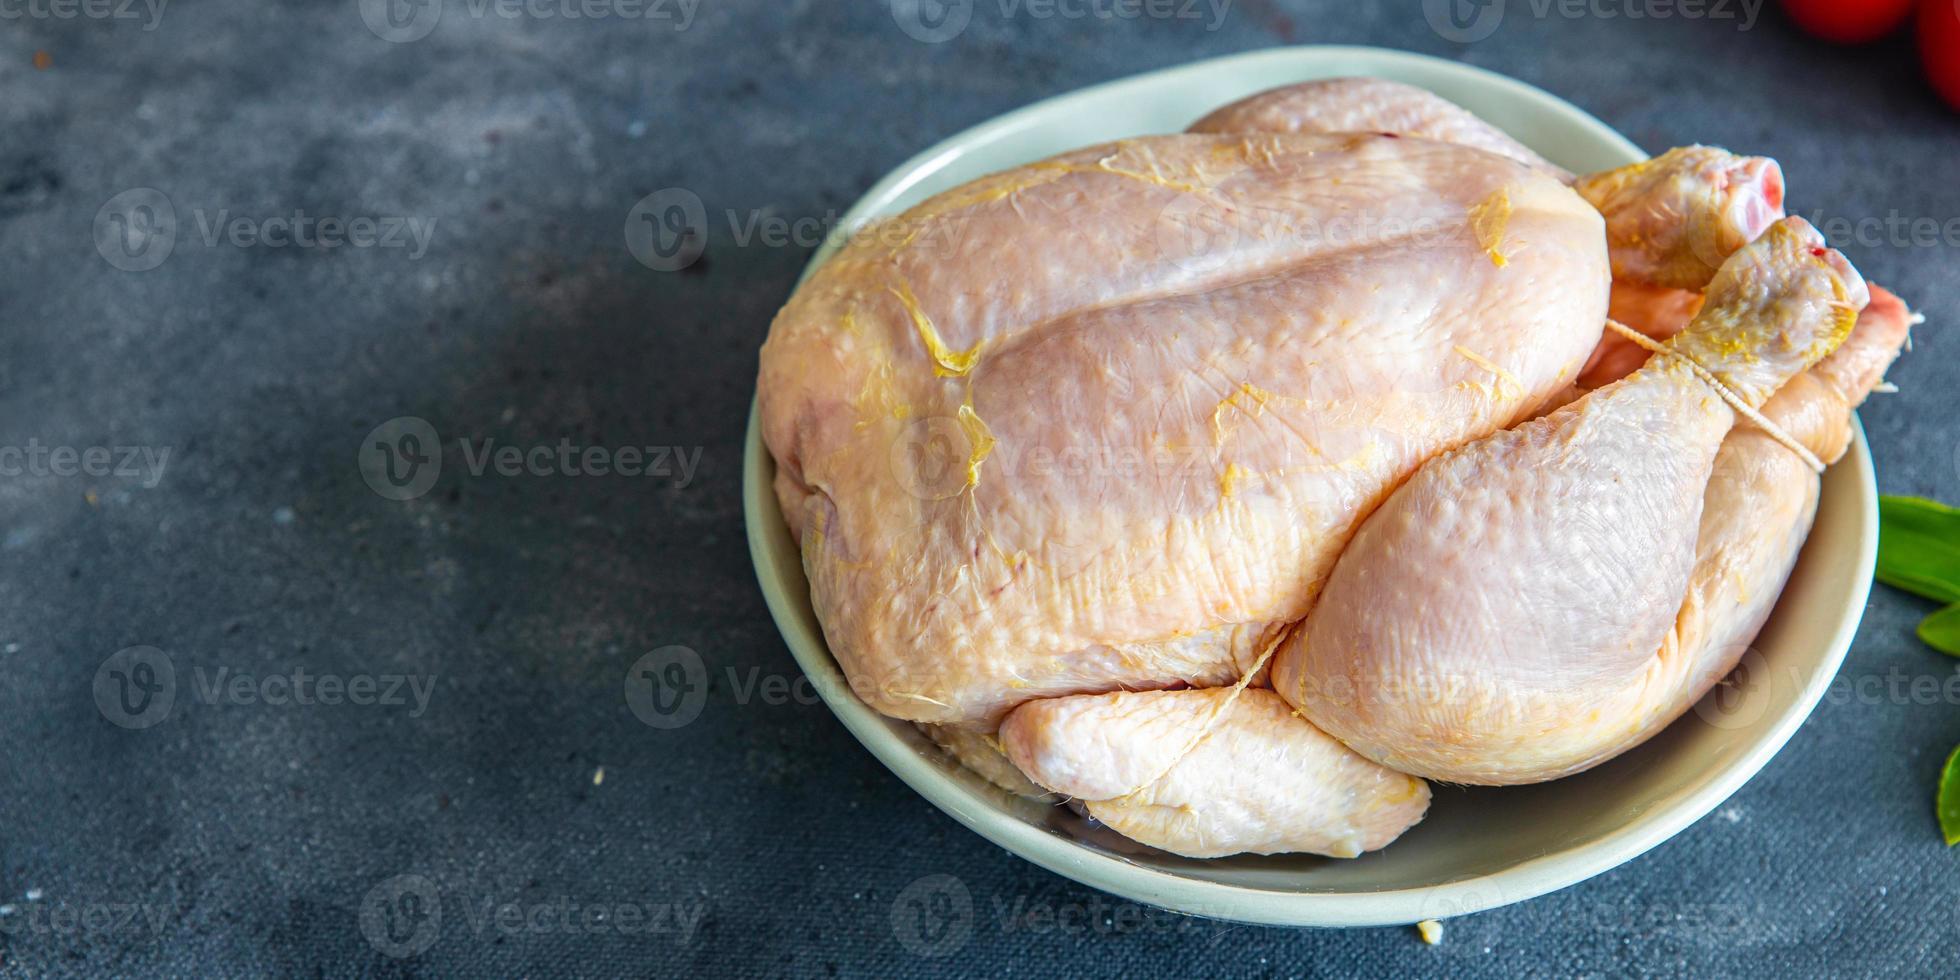 rohes hähnchenfleisch ganzes geflügel broiler frische gesunde mahlzeit essen snack diät auf dem tisch kopierraum foto